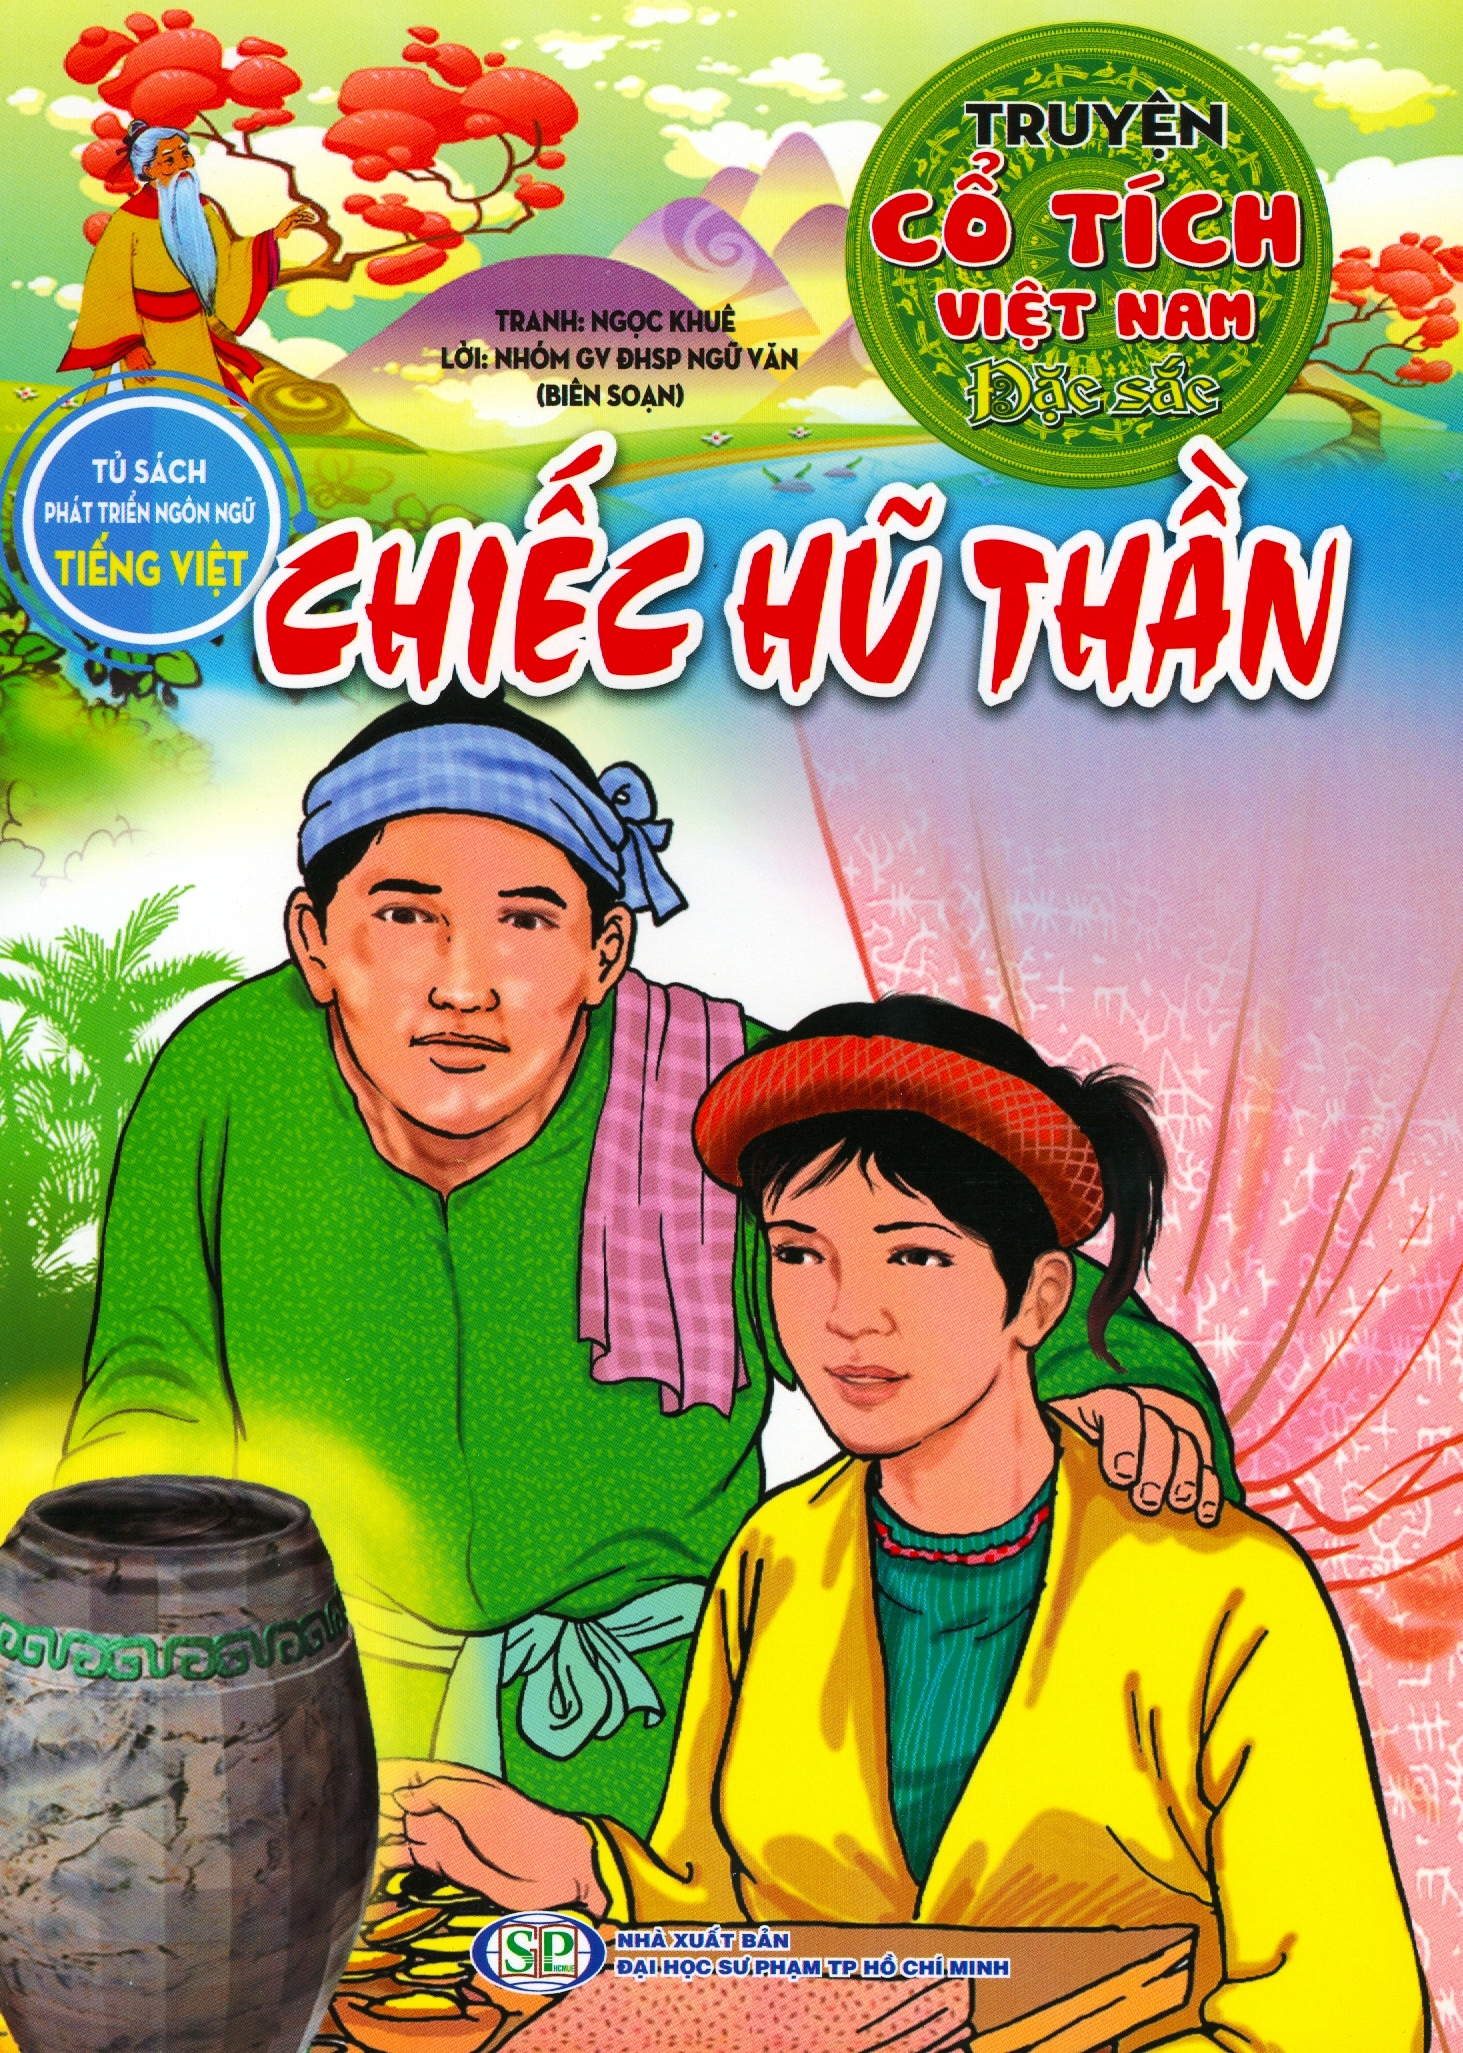 Truyện Cổ Tích Việt Nam Đặc Sắc – Chiếc Hũ Thần